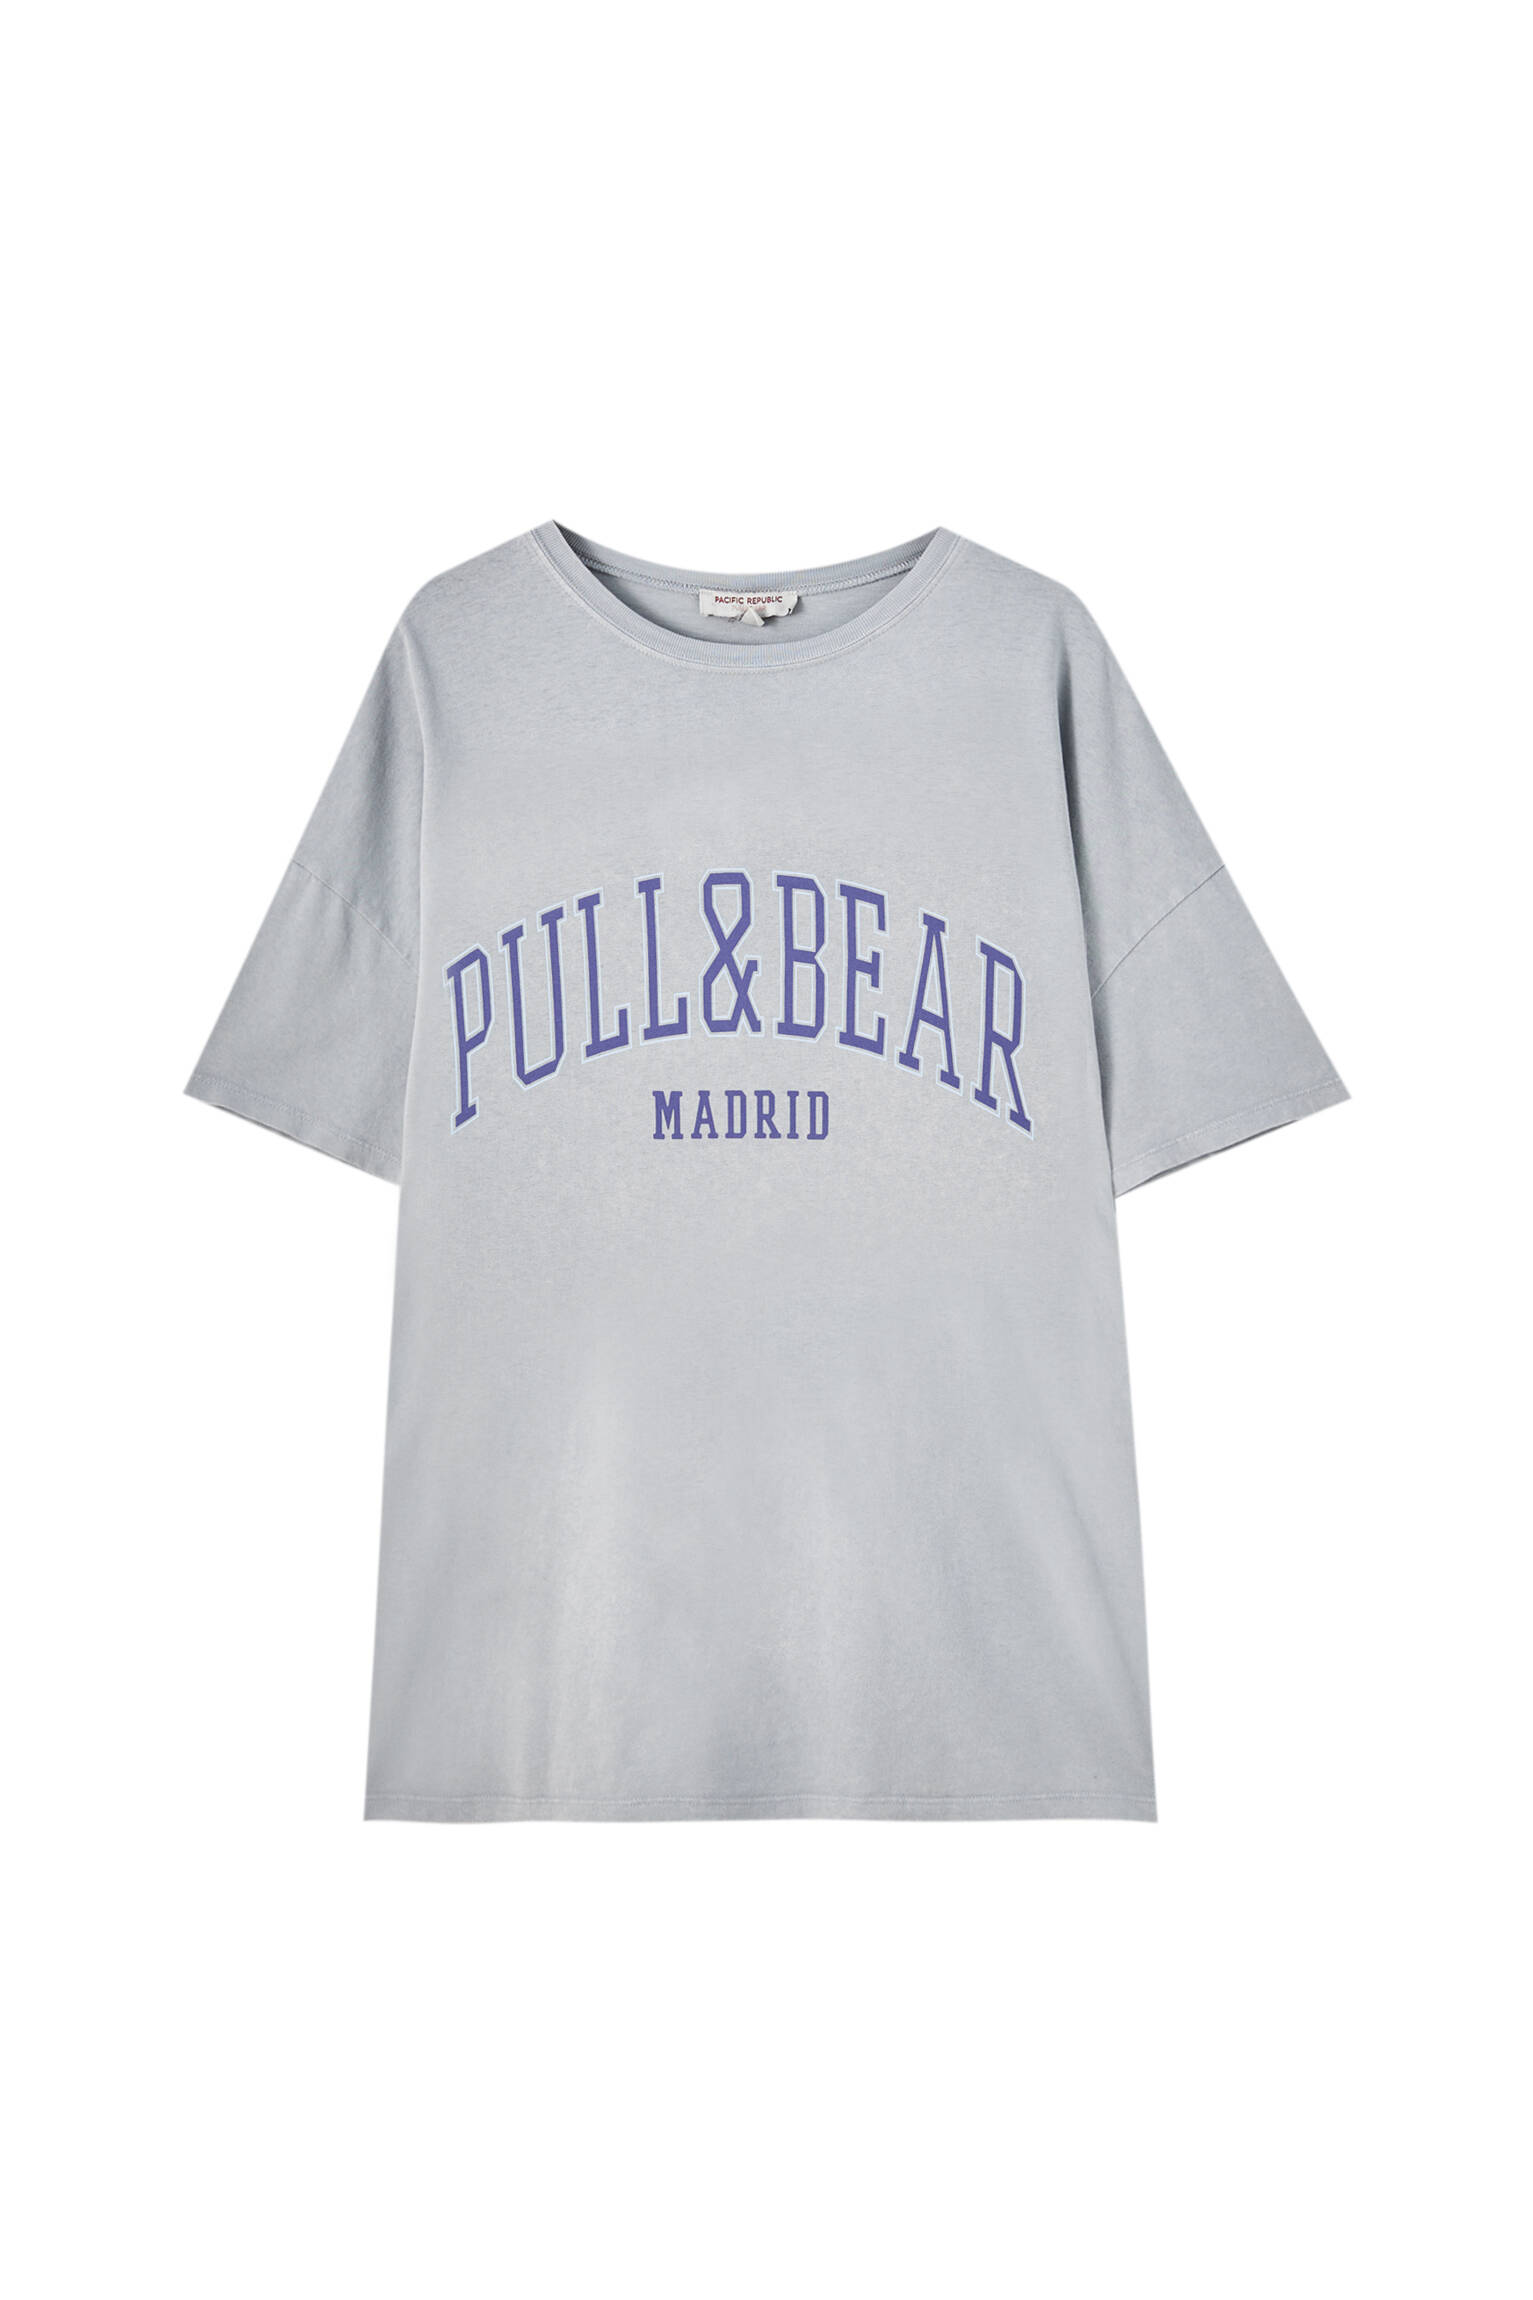 Pull&bear Femme T-shirt 100 % Coton à Col Rond Et Manches Courtes, Avec Logo Pull&bear Et Inscription Madrid Contrastante Sur La Poitrine. Gris Ciment S